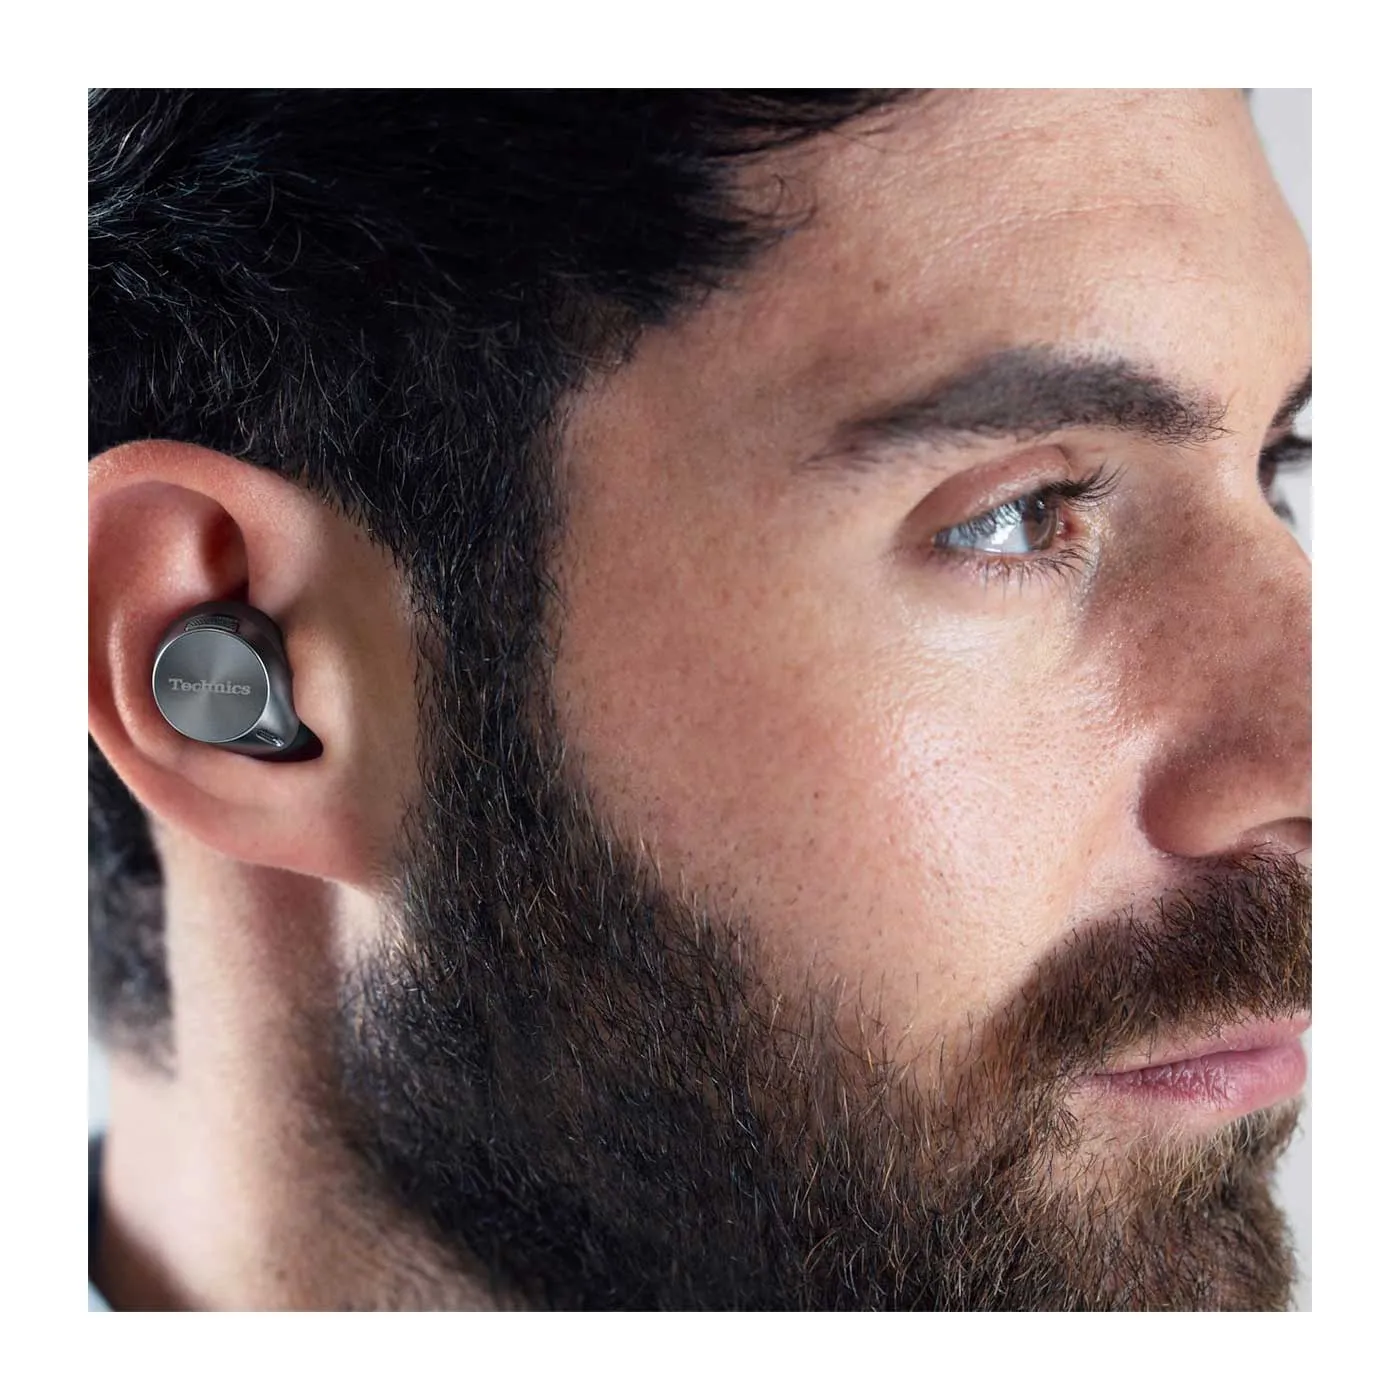 Audífonos TECHNICS Inalámbricos Bluetooth In Ear TWS AZ60P Negro